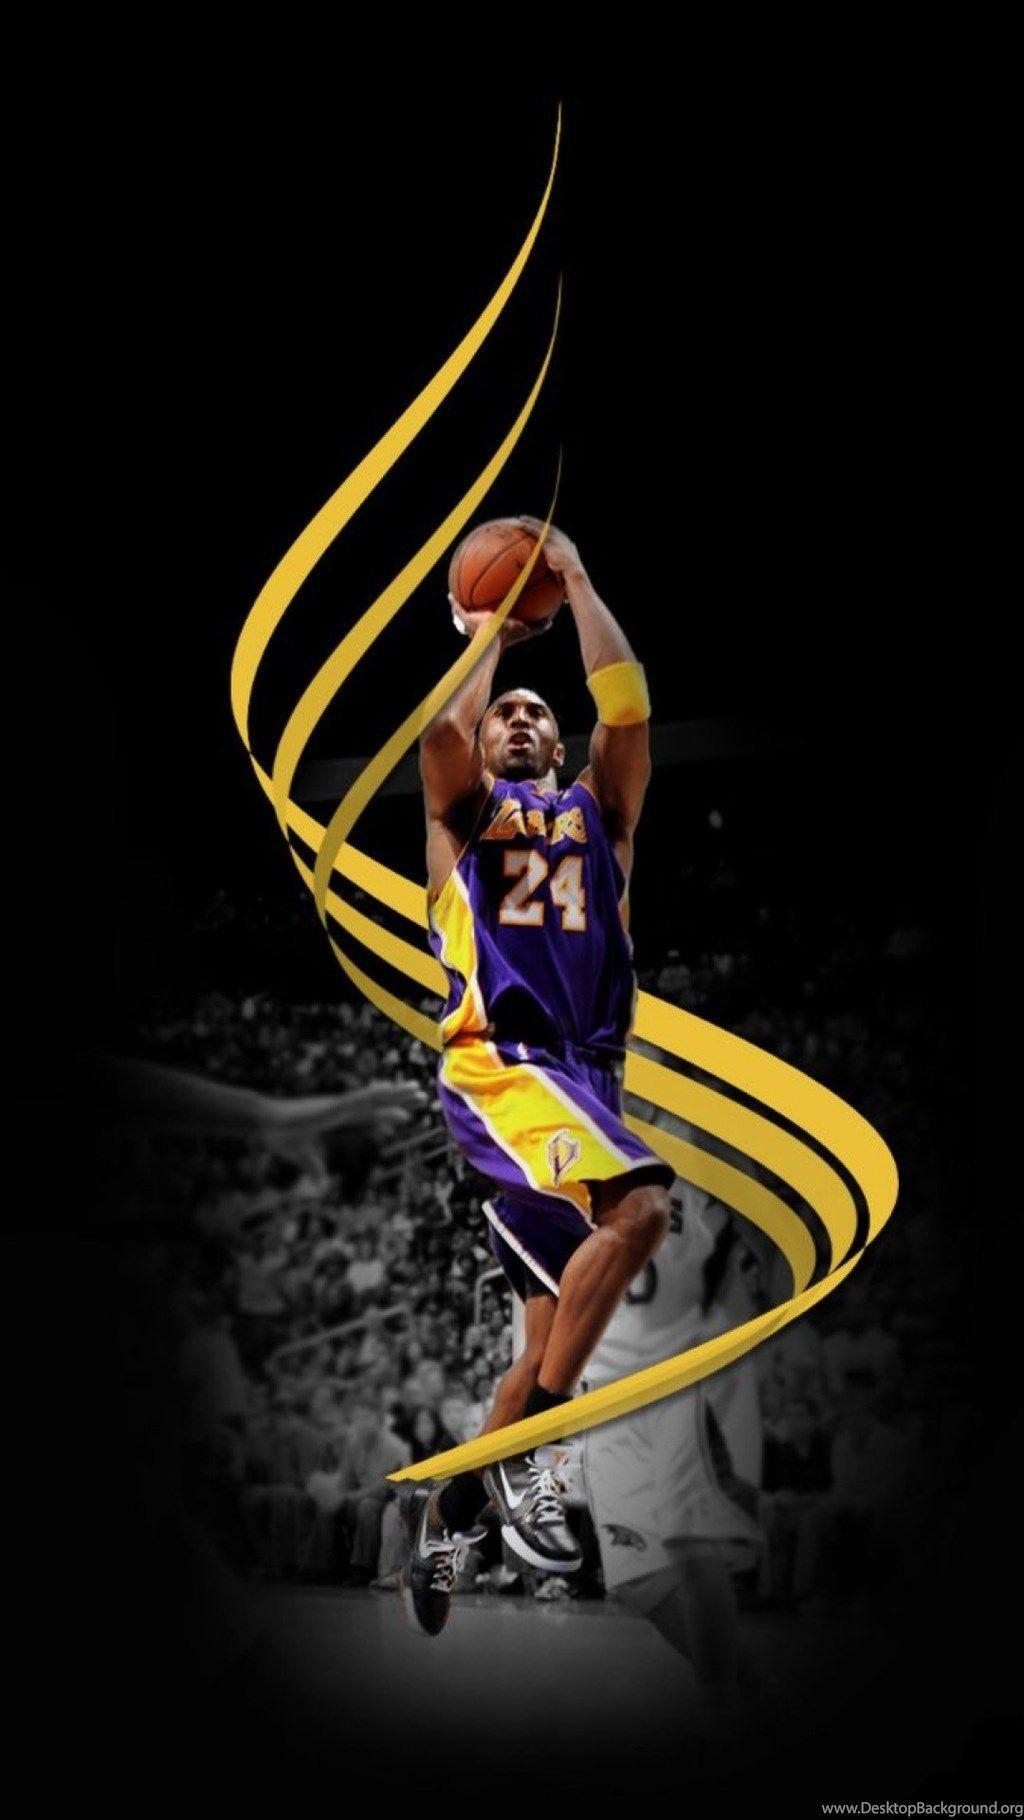 Kobe Bryant là một cầu thủ bóng rổ huyền thoại, với những chiến tích vô cùng ấn tượng. Nếu bạn muốn tìm hiểu về hành trình của Kobe trong sự nghiệp cũng như cuộc đời, hãy xem hình ảnh liên quan đến anh ấy ngay. 